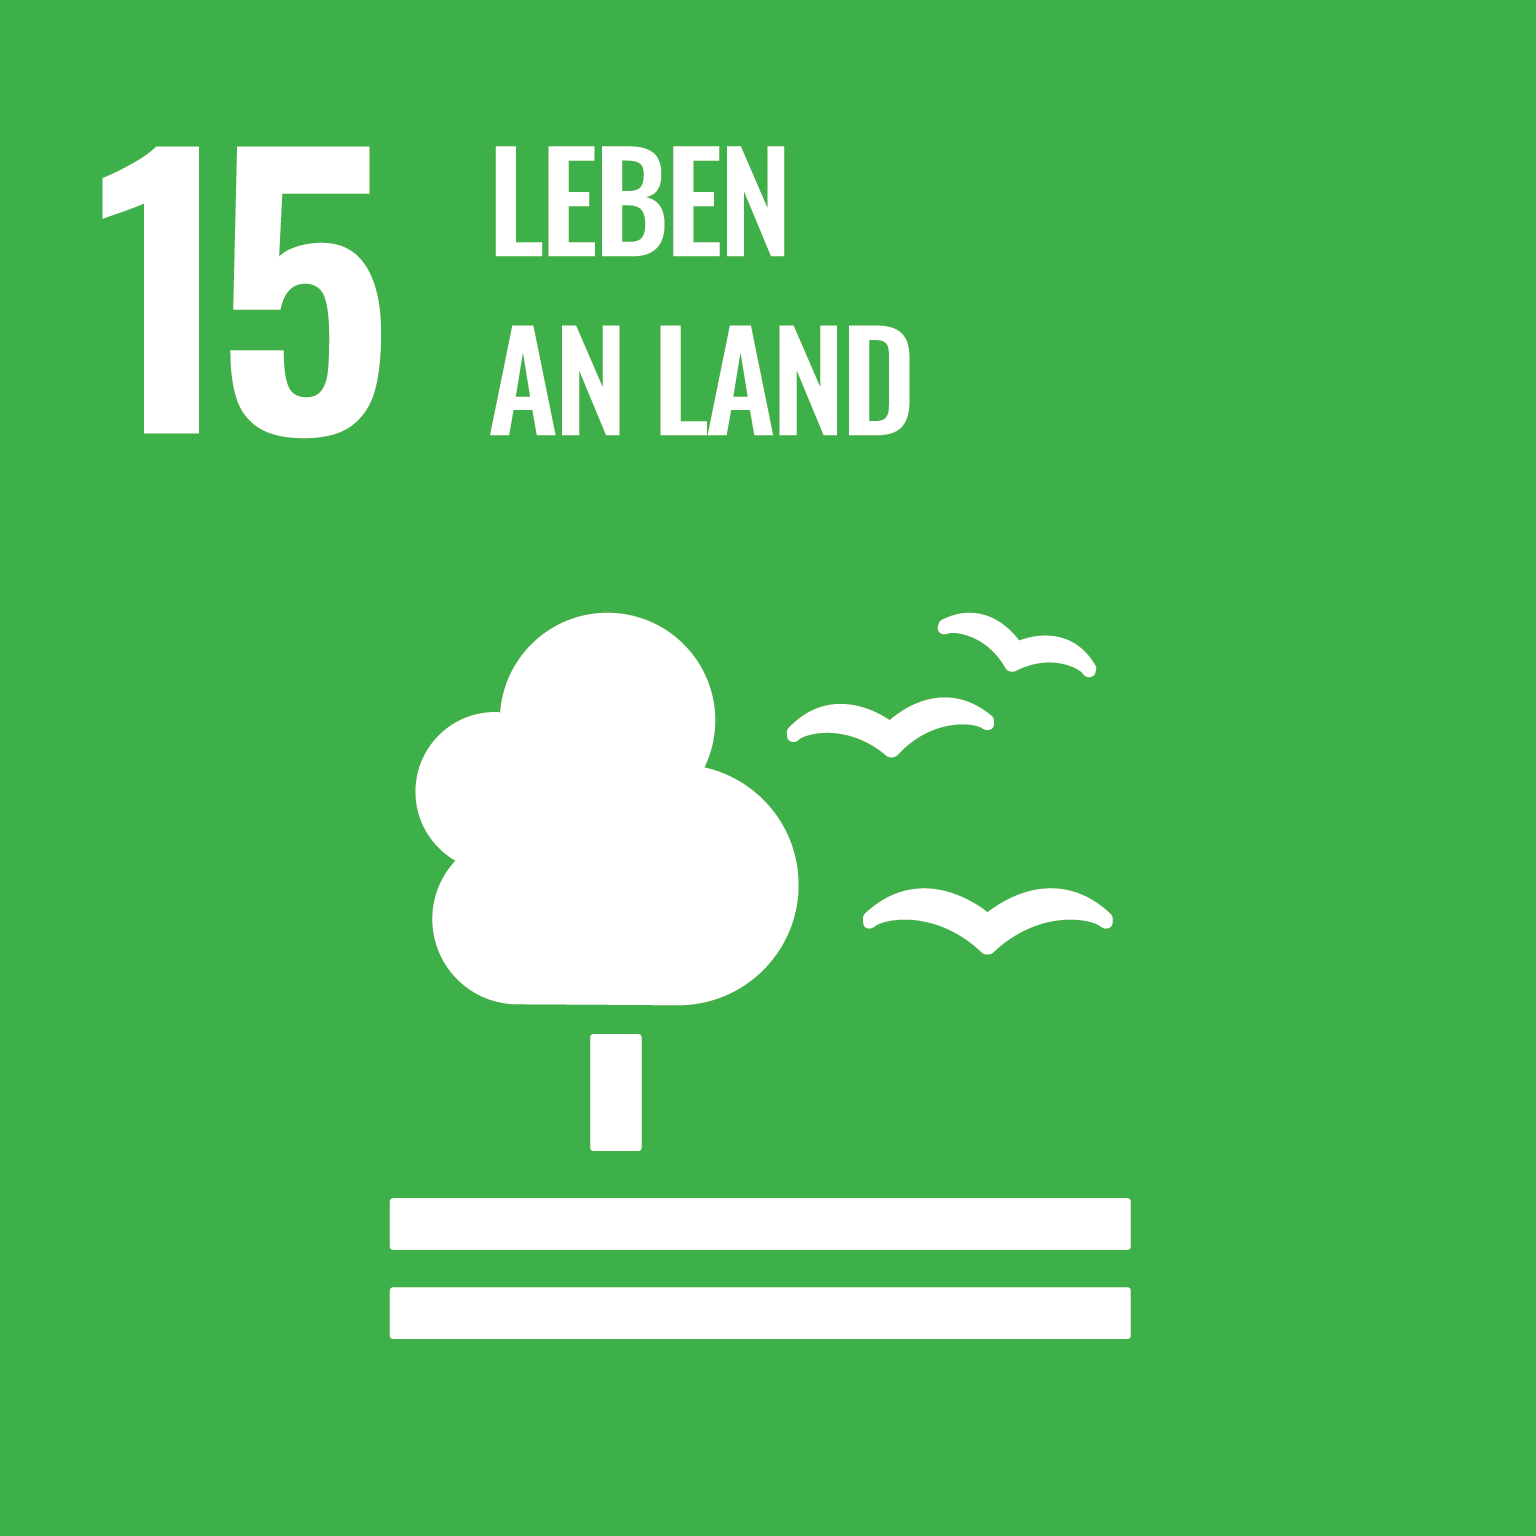 SDG 15-Icon "Leben an Land"